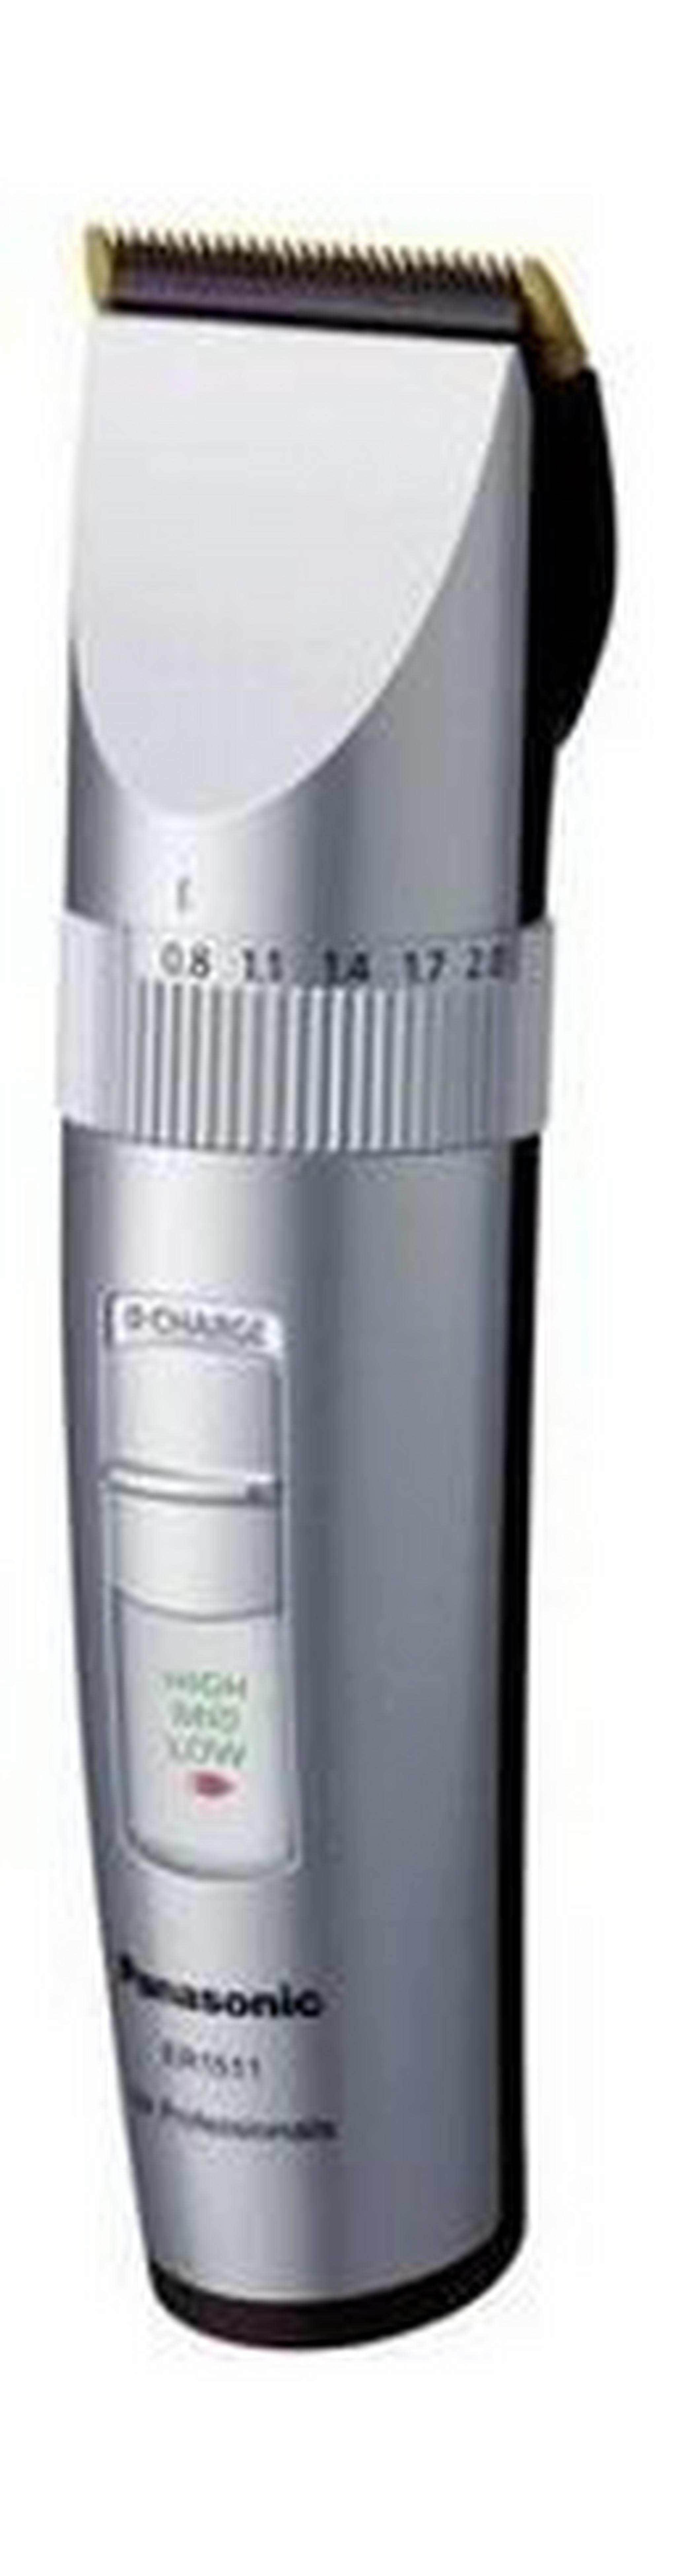 Panasonic Hair & Beard Trimmer, ER-1511 - Silver